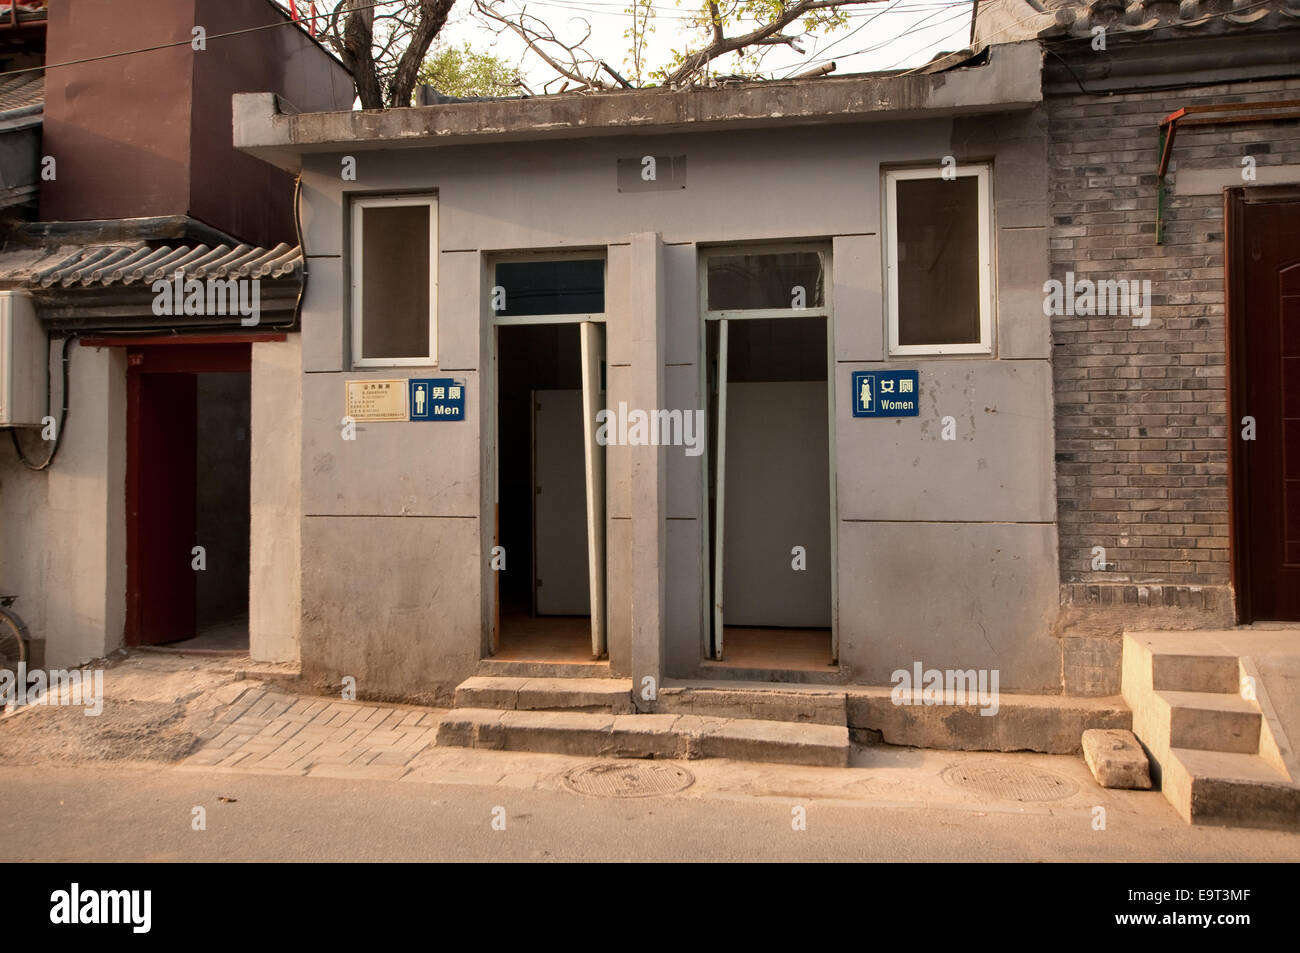 Les toilettes publiques, hutong, Beijing, Chine Banque D'Images